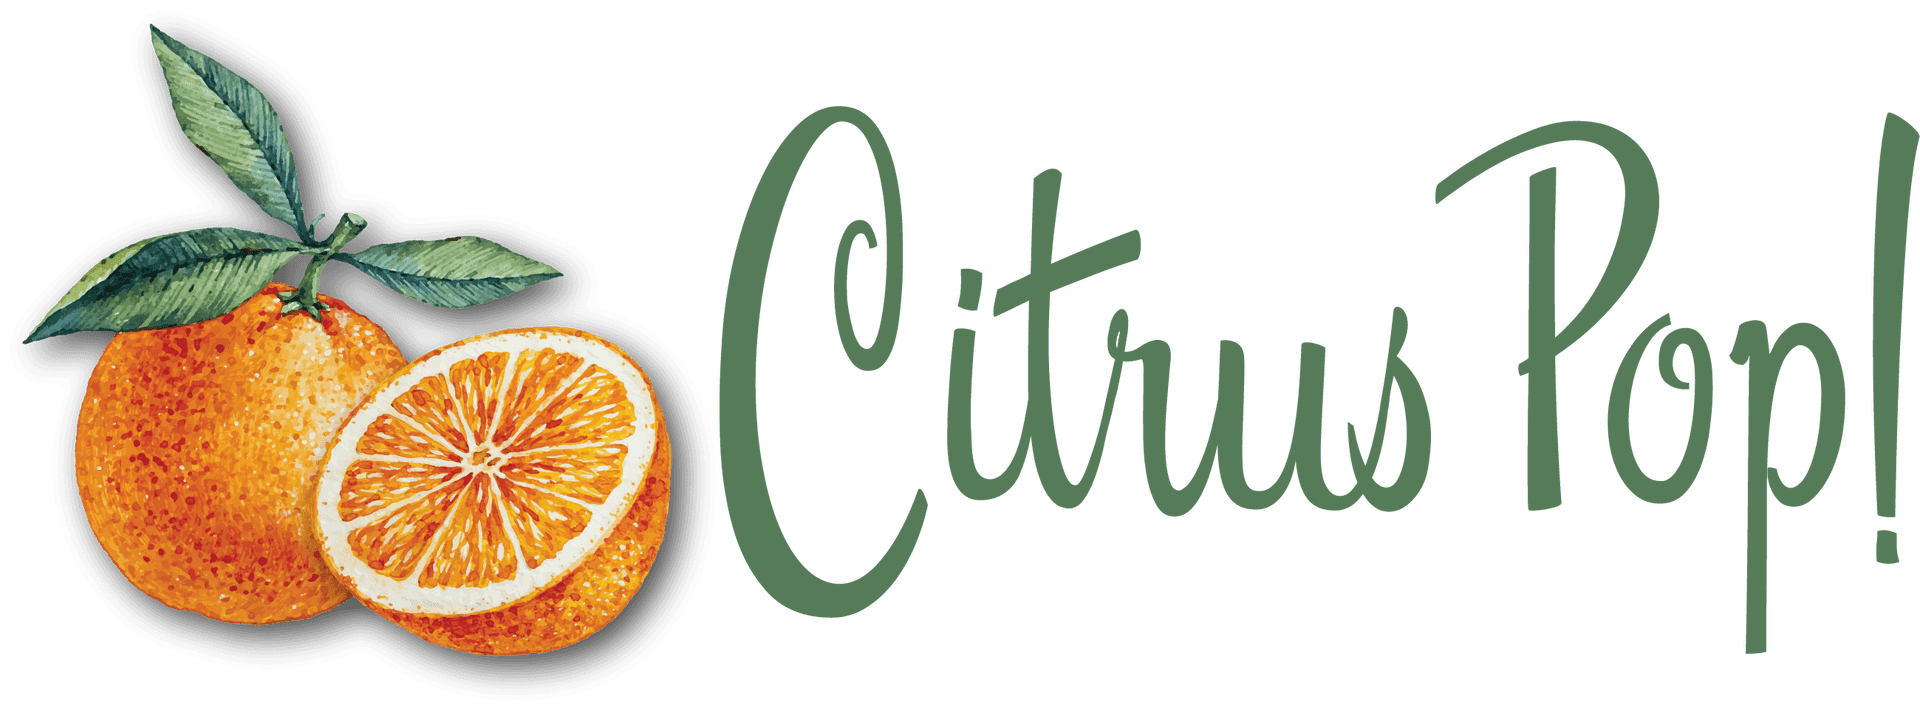 Citrus Pop Graphic PNG image